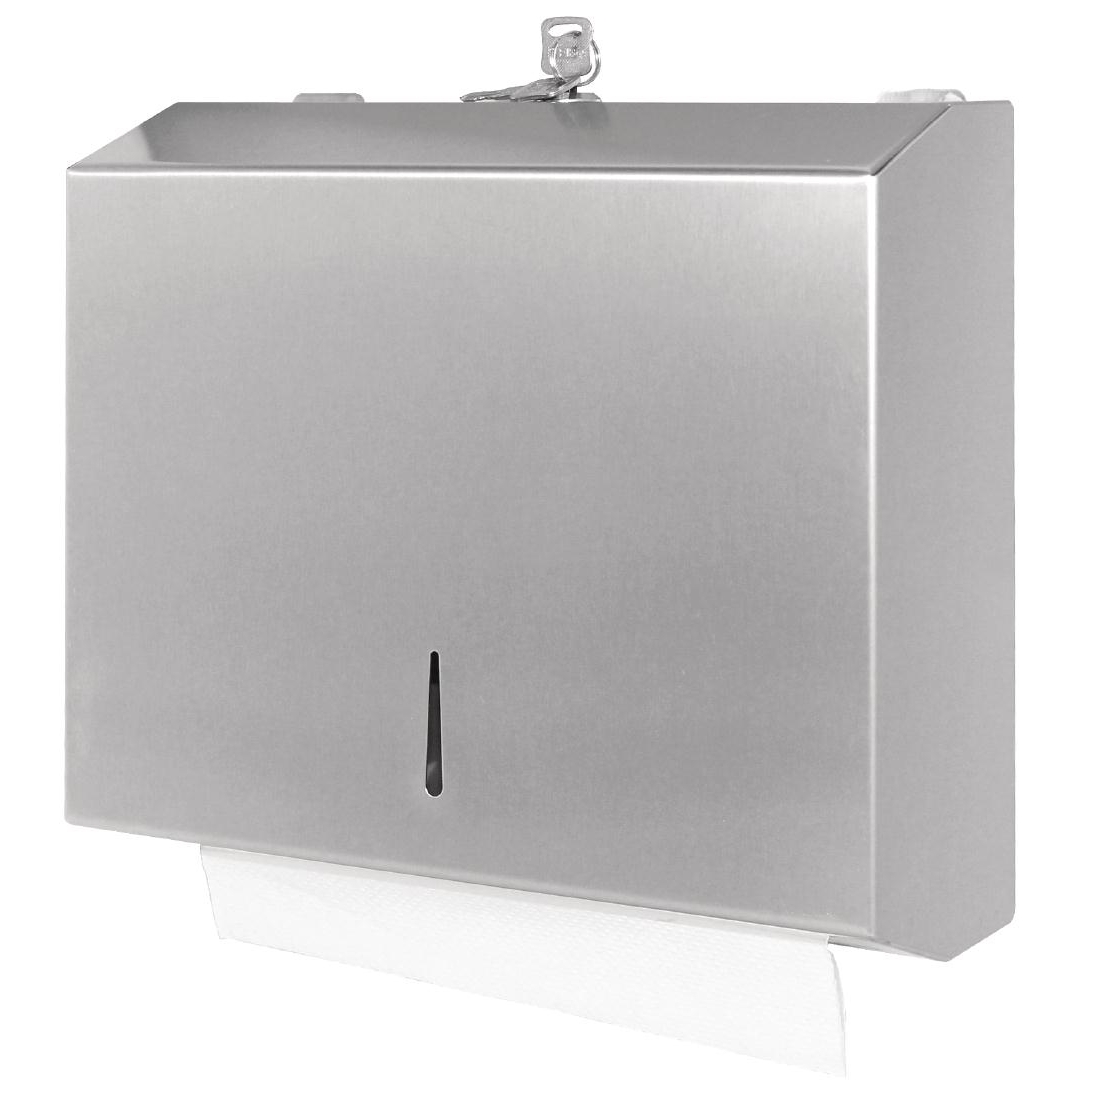 Stainless Steel hand towel dispenser - GJ033